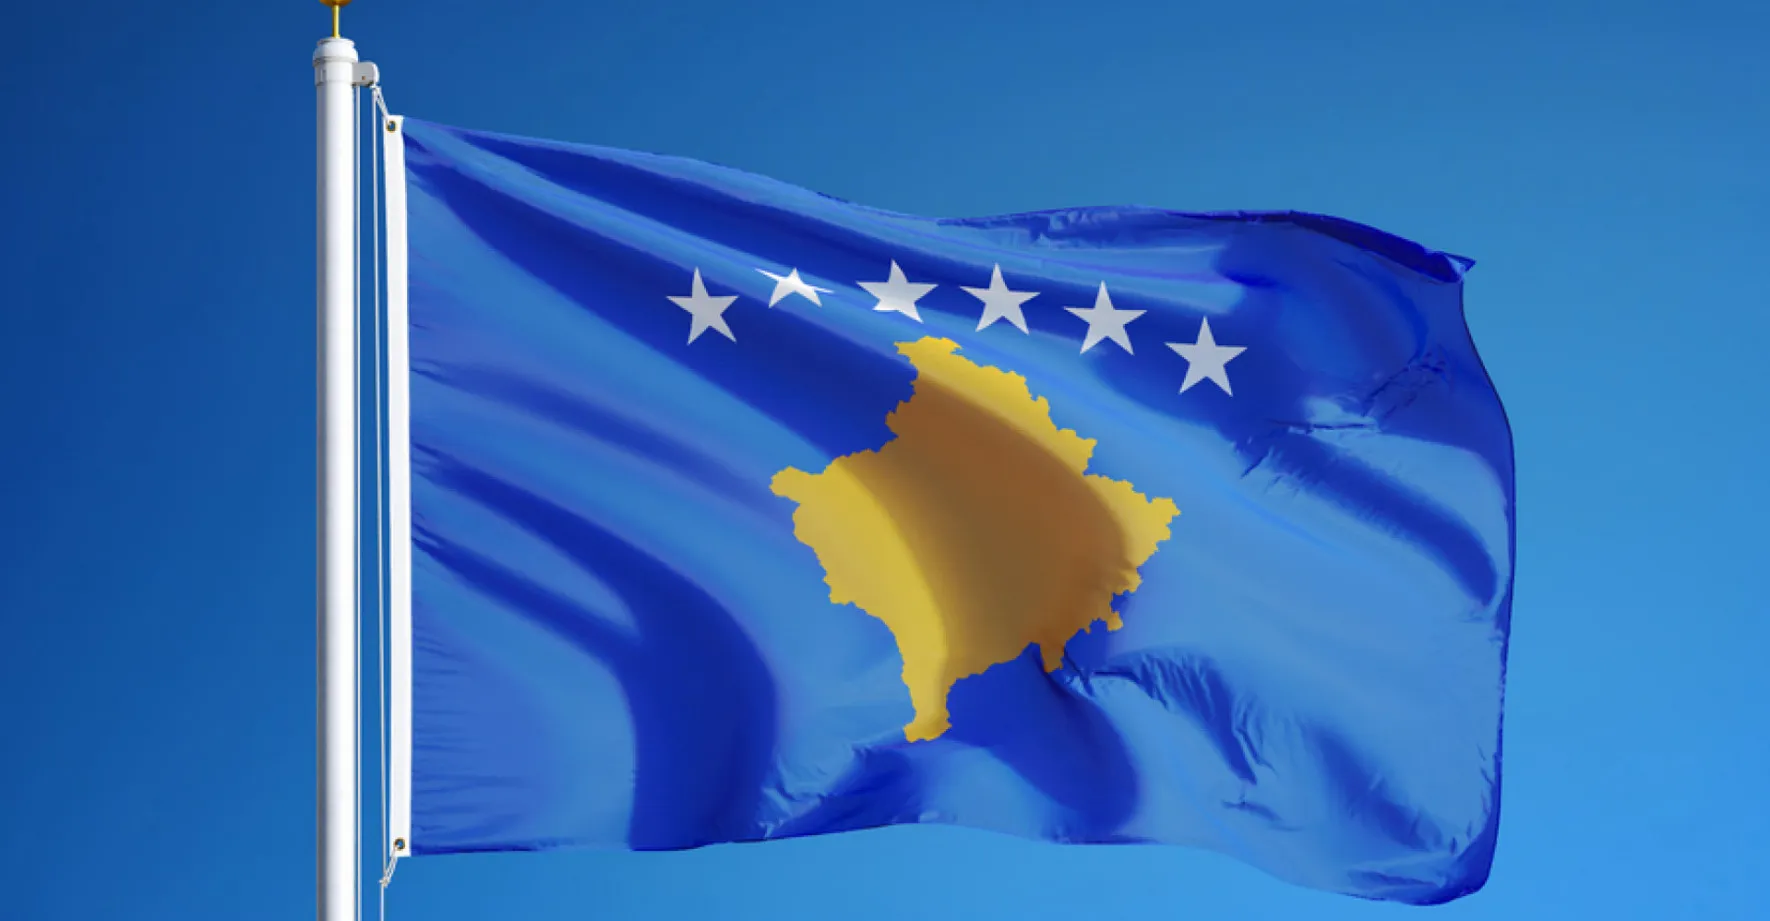 EU: Srbsko a Kosovo urovnaly spor ohledně pohybu přes společnou hranici